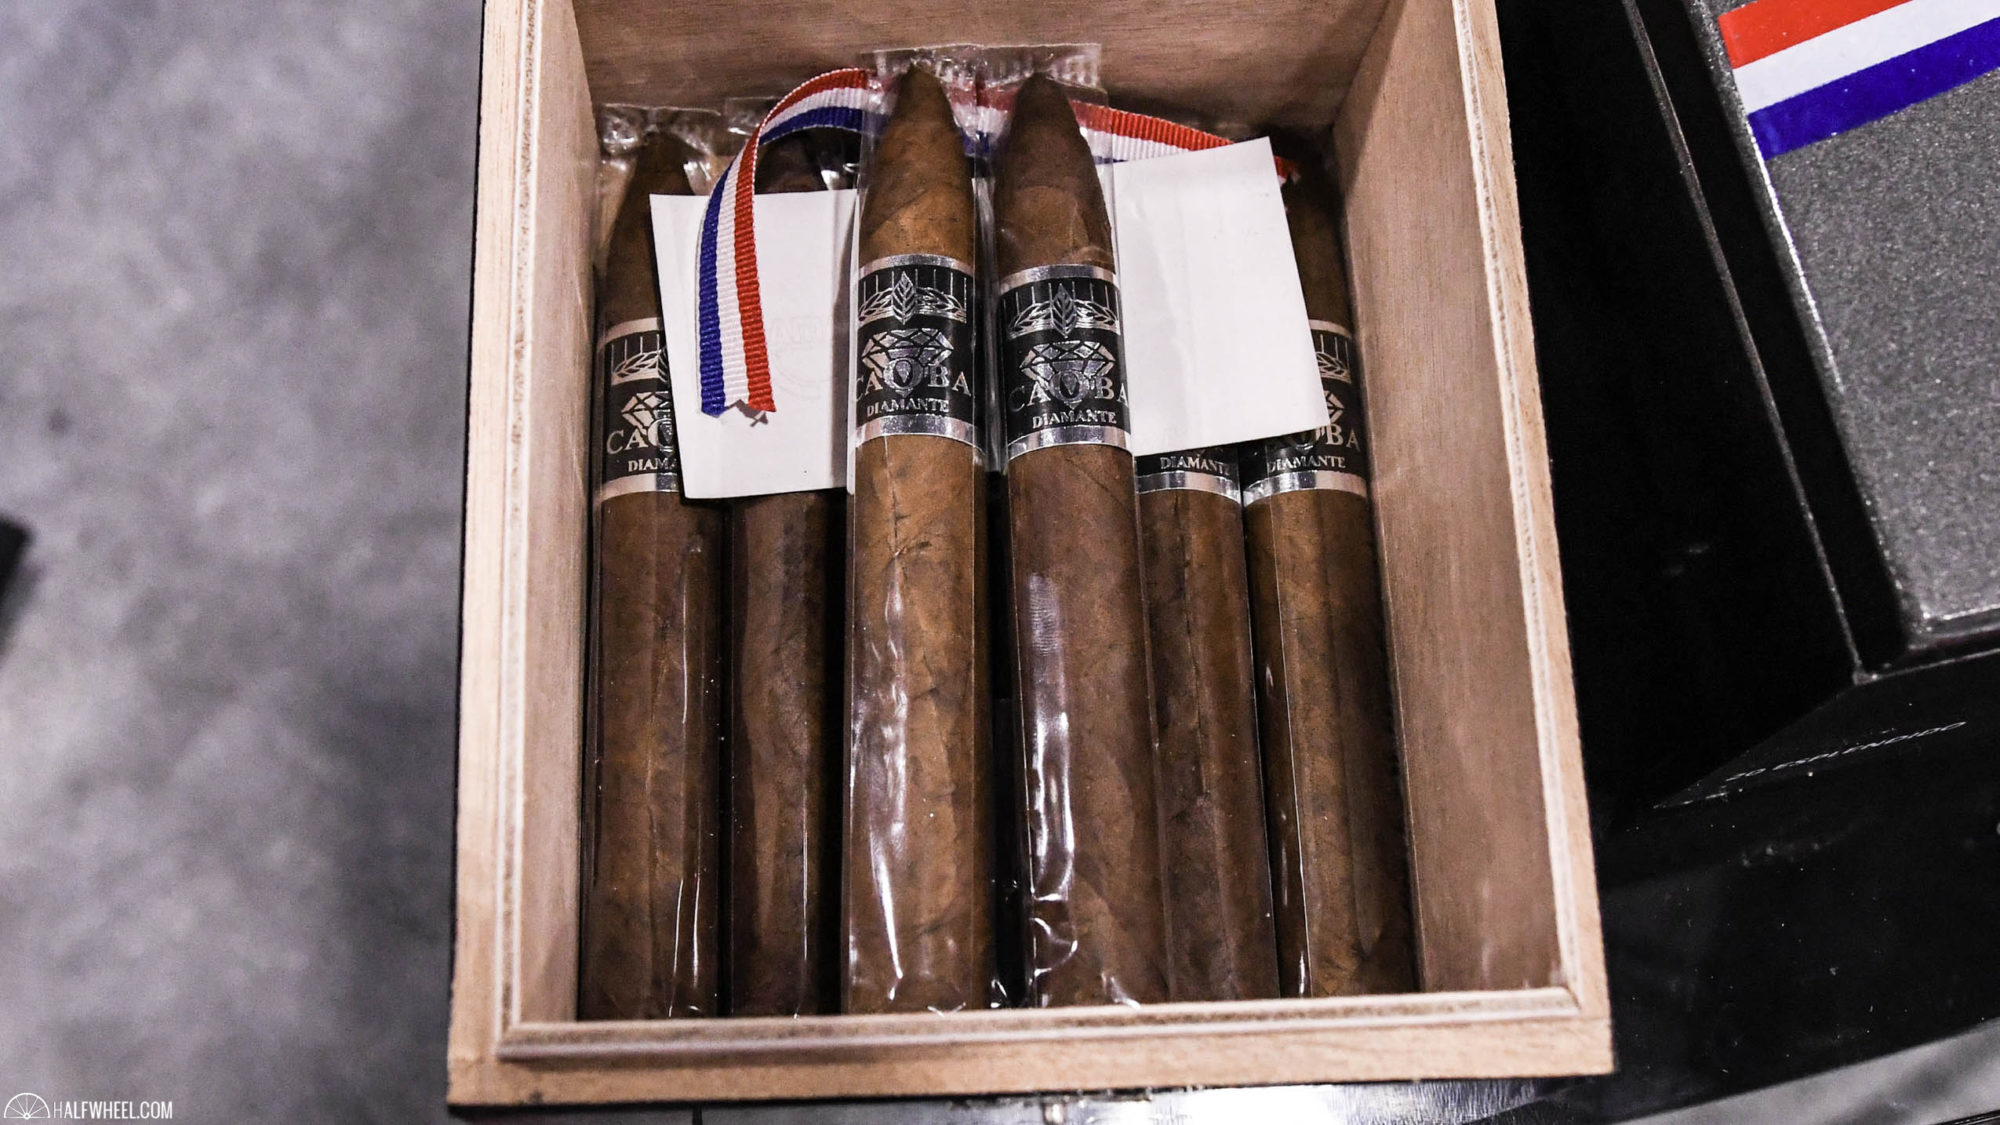 Cigar Review: Caoba Cigars Don Manuel